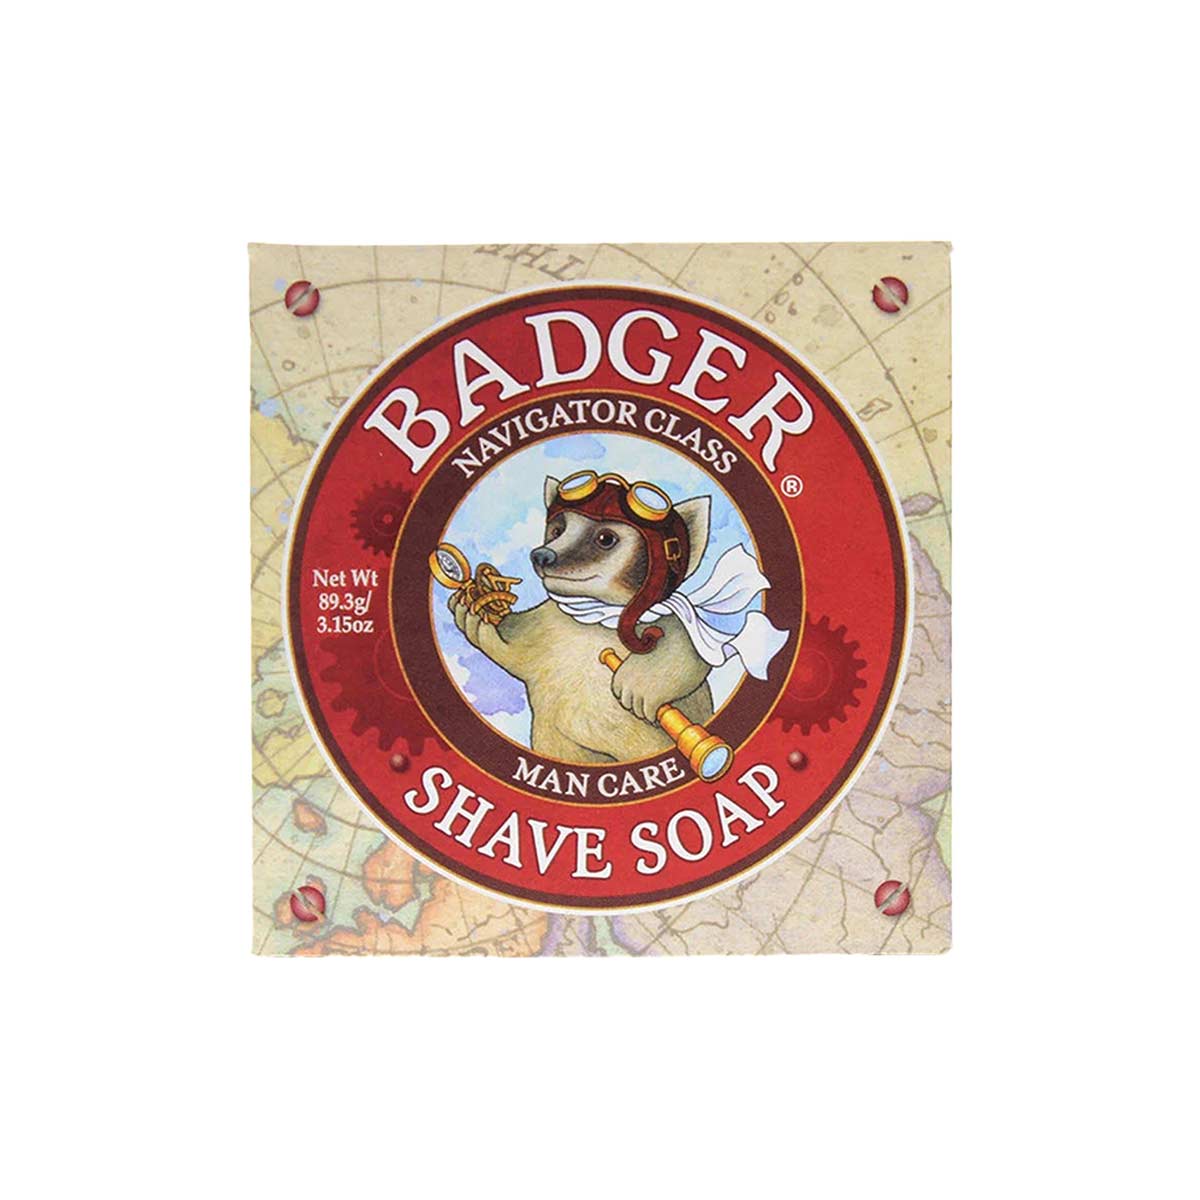 Badger Shaving Soap Bar 89g